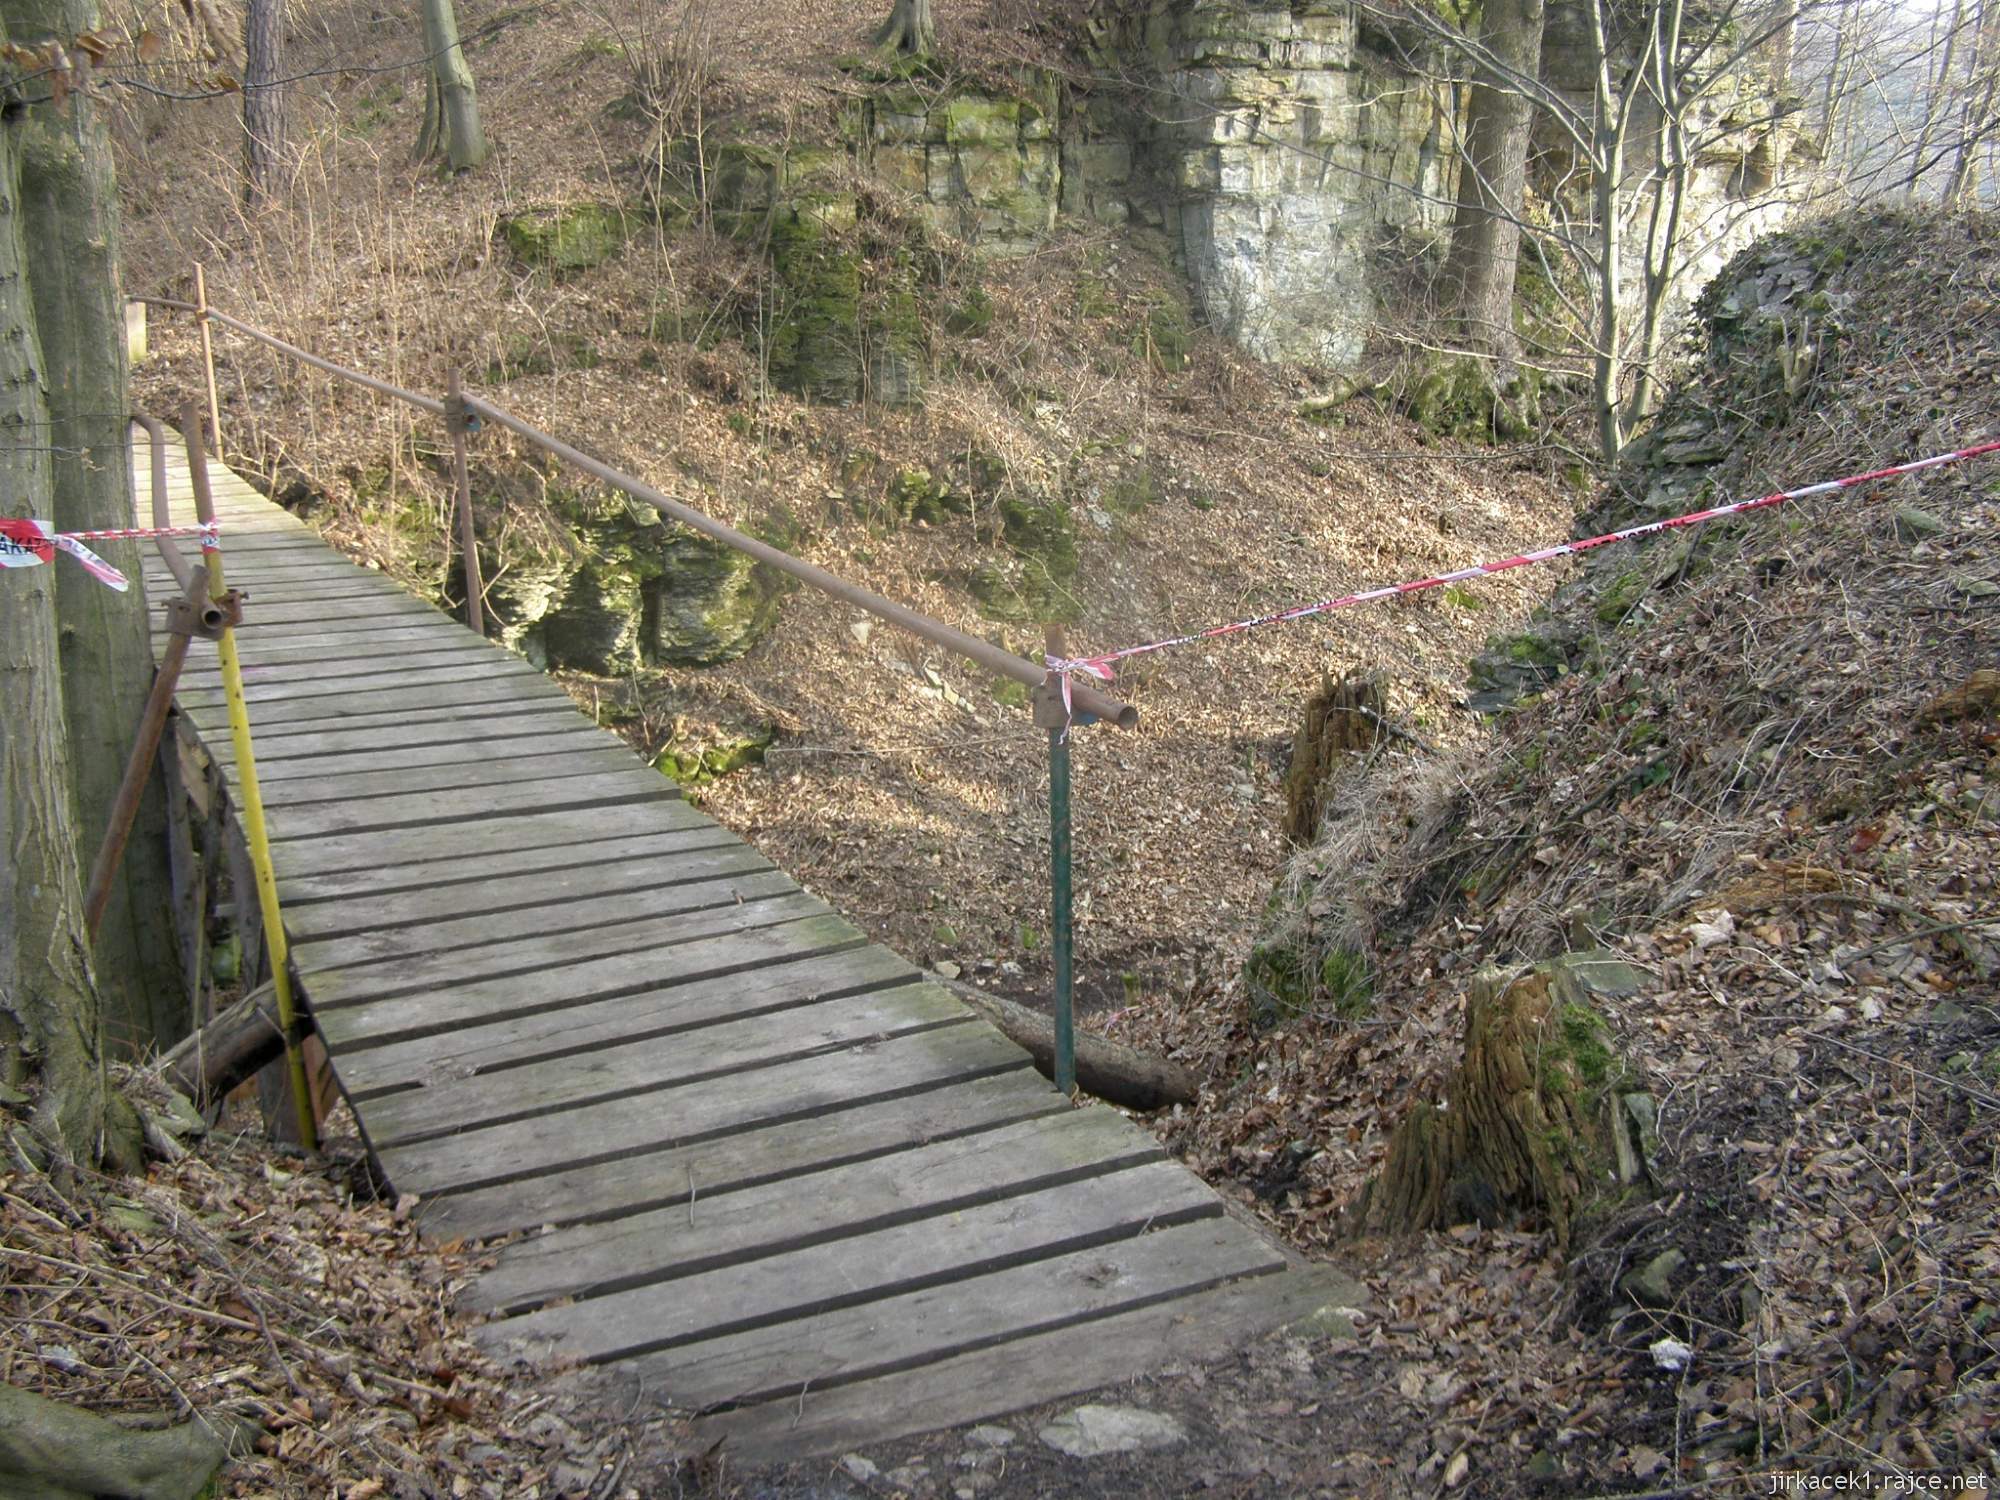 Brandýs nad Orlicí - zřícenina hradu 04 - mostek přes hradní příkop